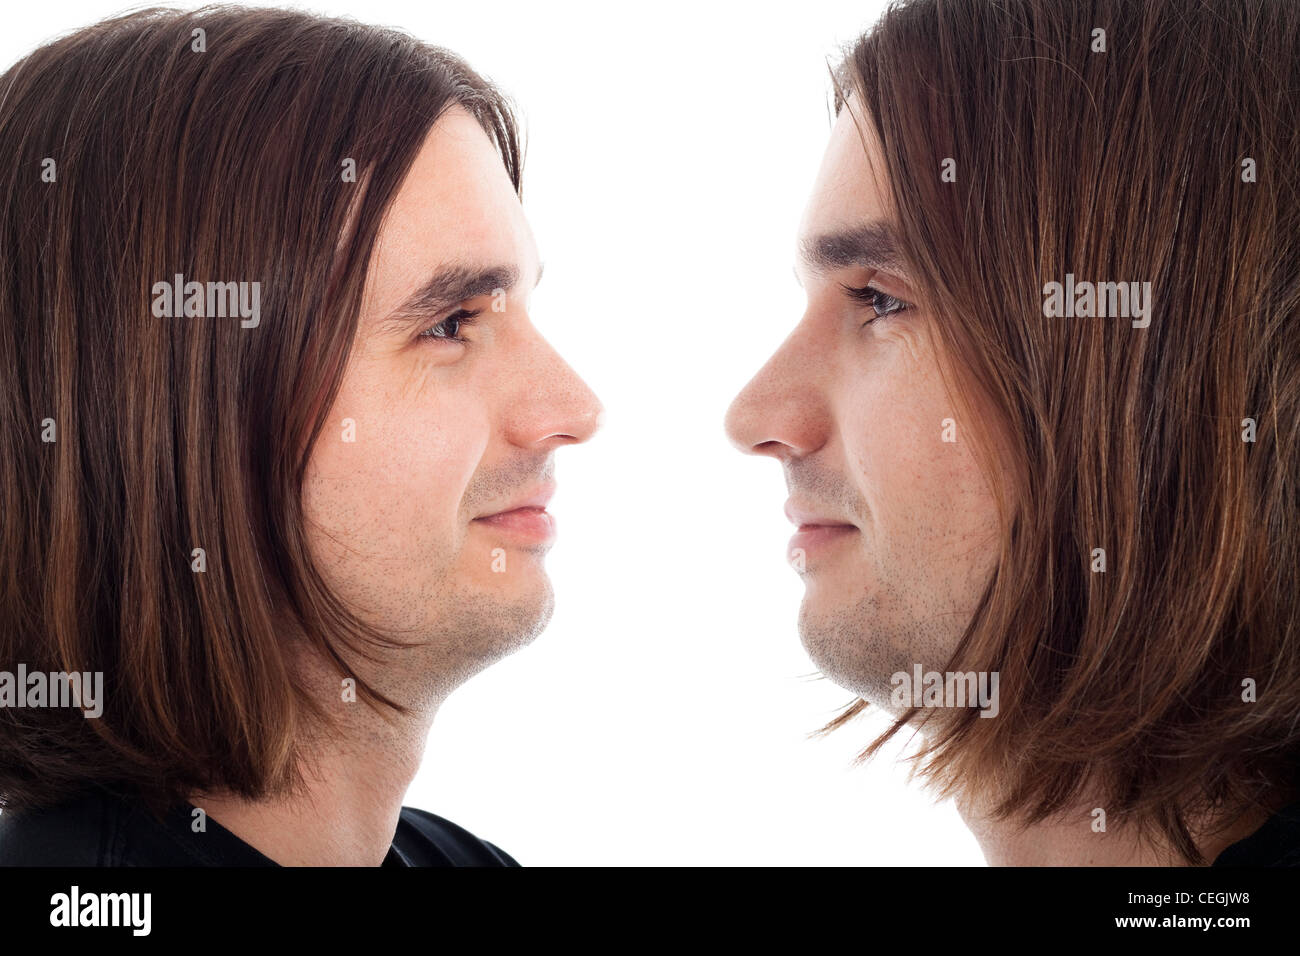 Profili dei giovani dai capelli lunghi uomo folle sorriso faccia rilassata, isolato su sfondo bianco. Foto Stock